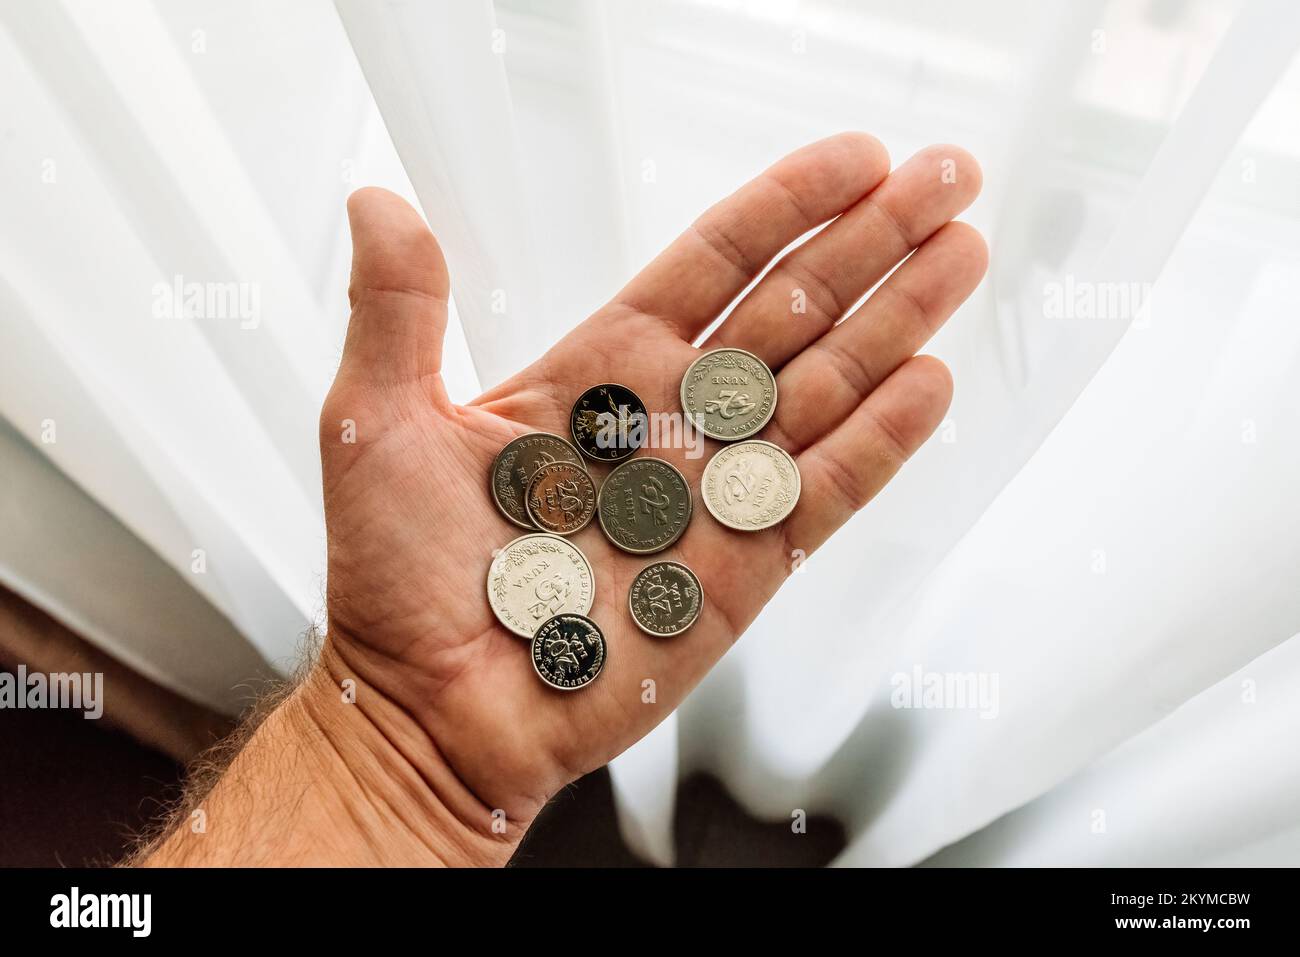 Lovran, Kroatien - 12. September 2022: Mann mit kroatischen Kuna- und Lipa-Münzen in der Hand. Kuna ist die Währung, die in Kroatien seit 1194 verwendet wird und verwendet wird Stockfoto